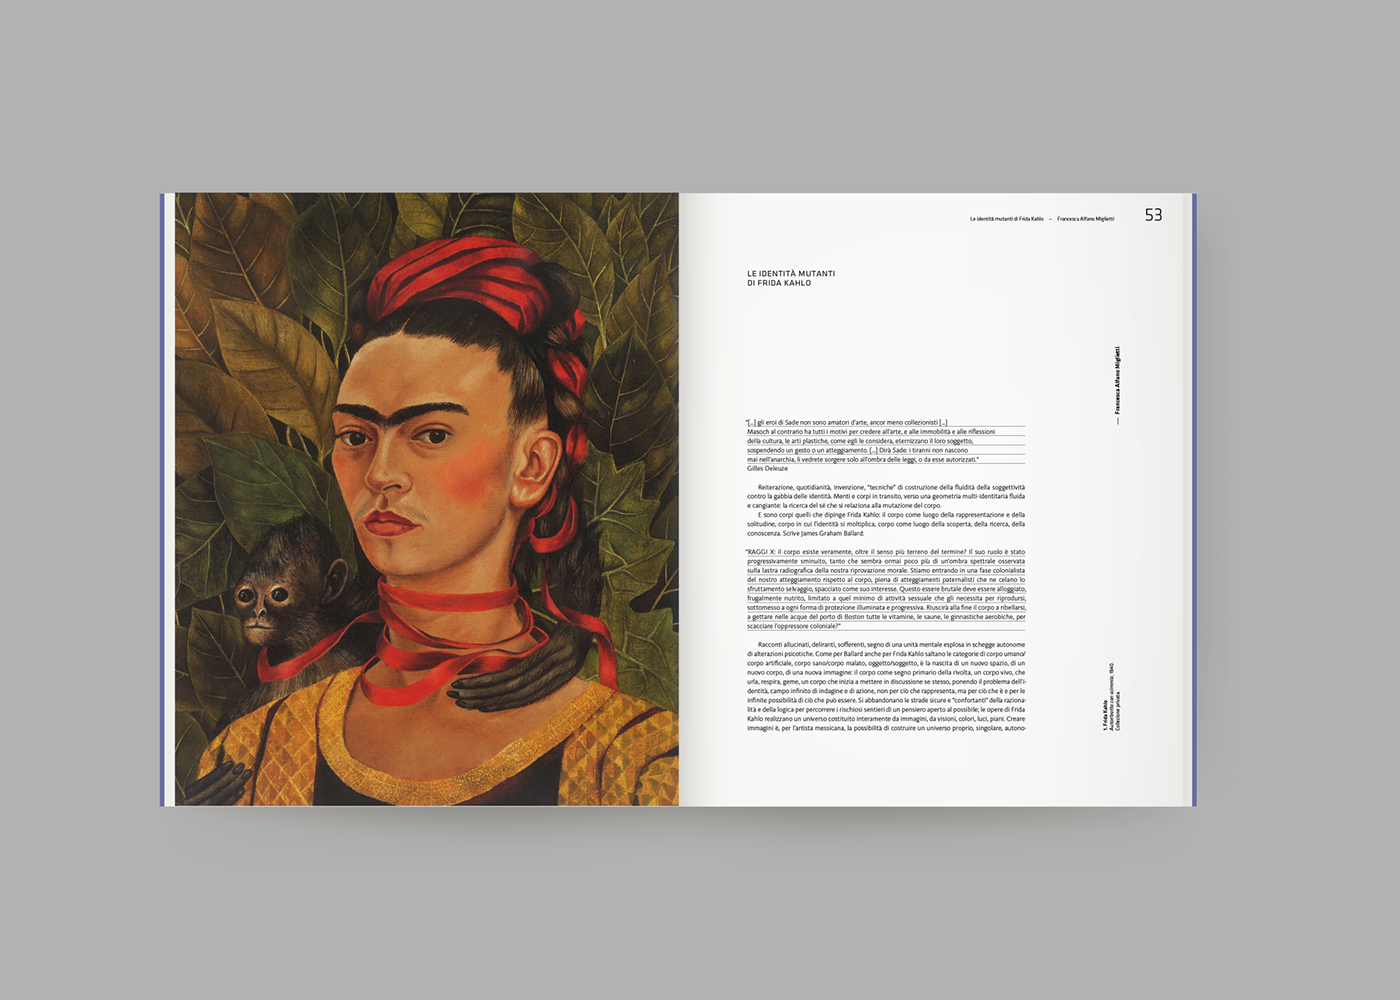 Frida Kahlo frida exhibit Exhibition  studiofm StudioFMmilano book Catalogue